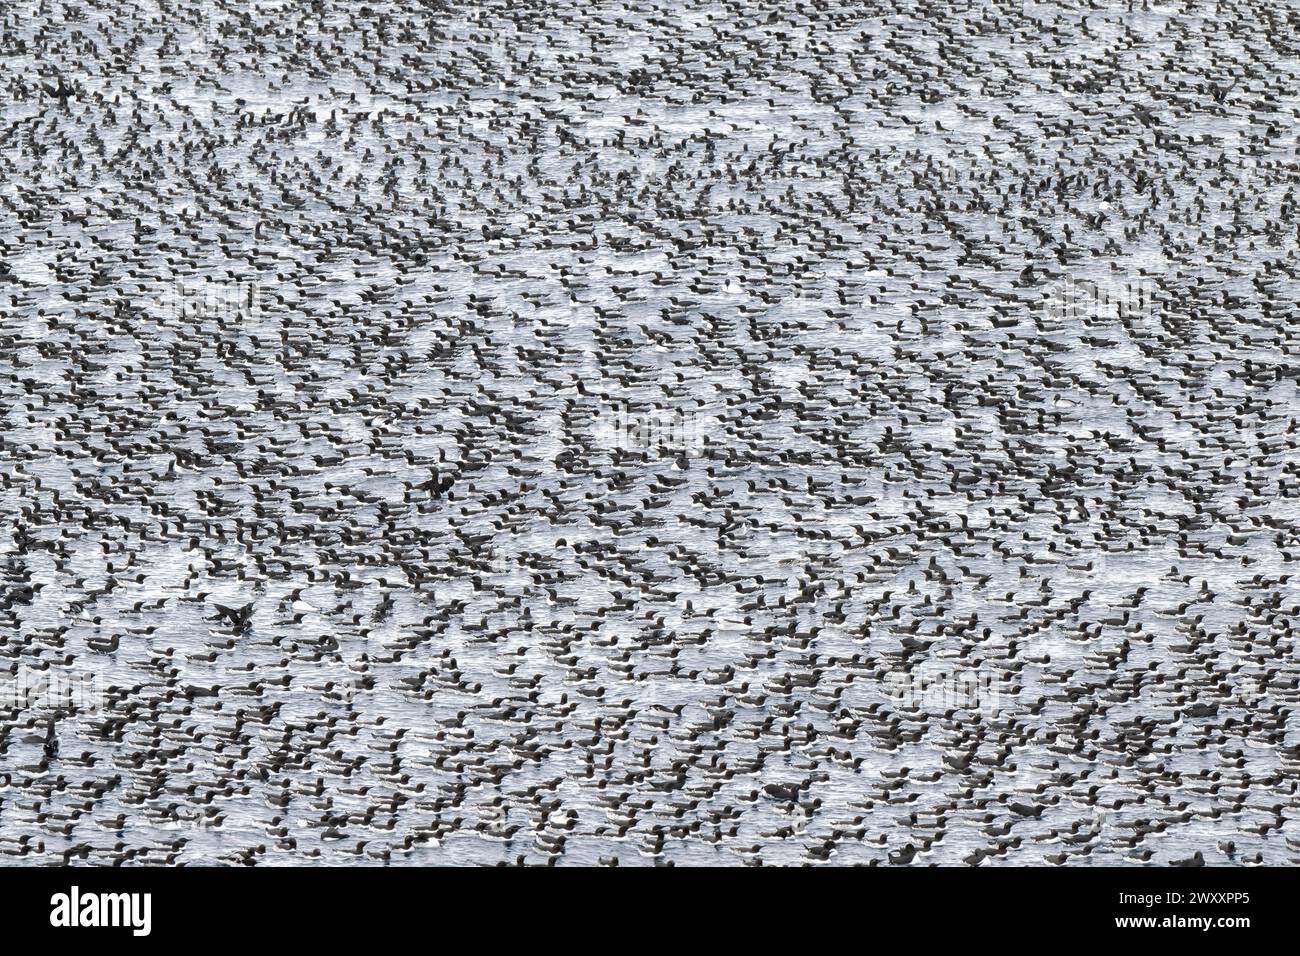 Vogelherde, gemeine Guillemoten (Uria aalge) im Meer schwimmen, Insel Hornoya, Hornoya, Vardo, Halbinsel Varanger, Troms og Finnmark, Norwegen Stockfoto